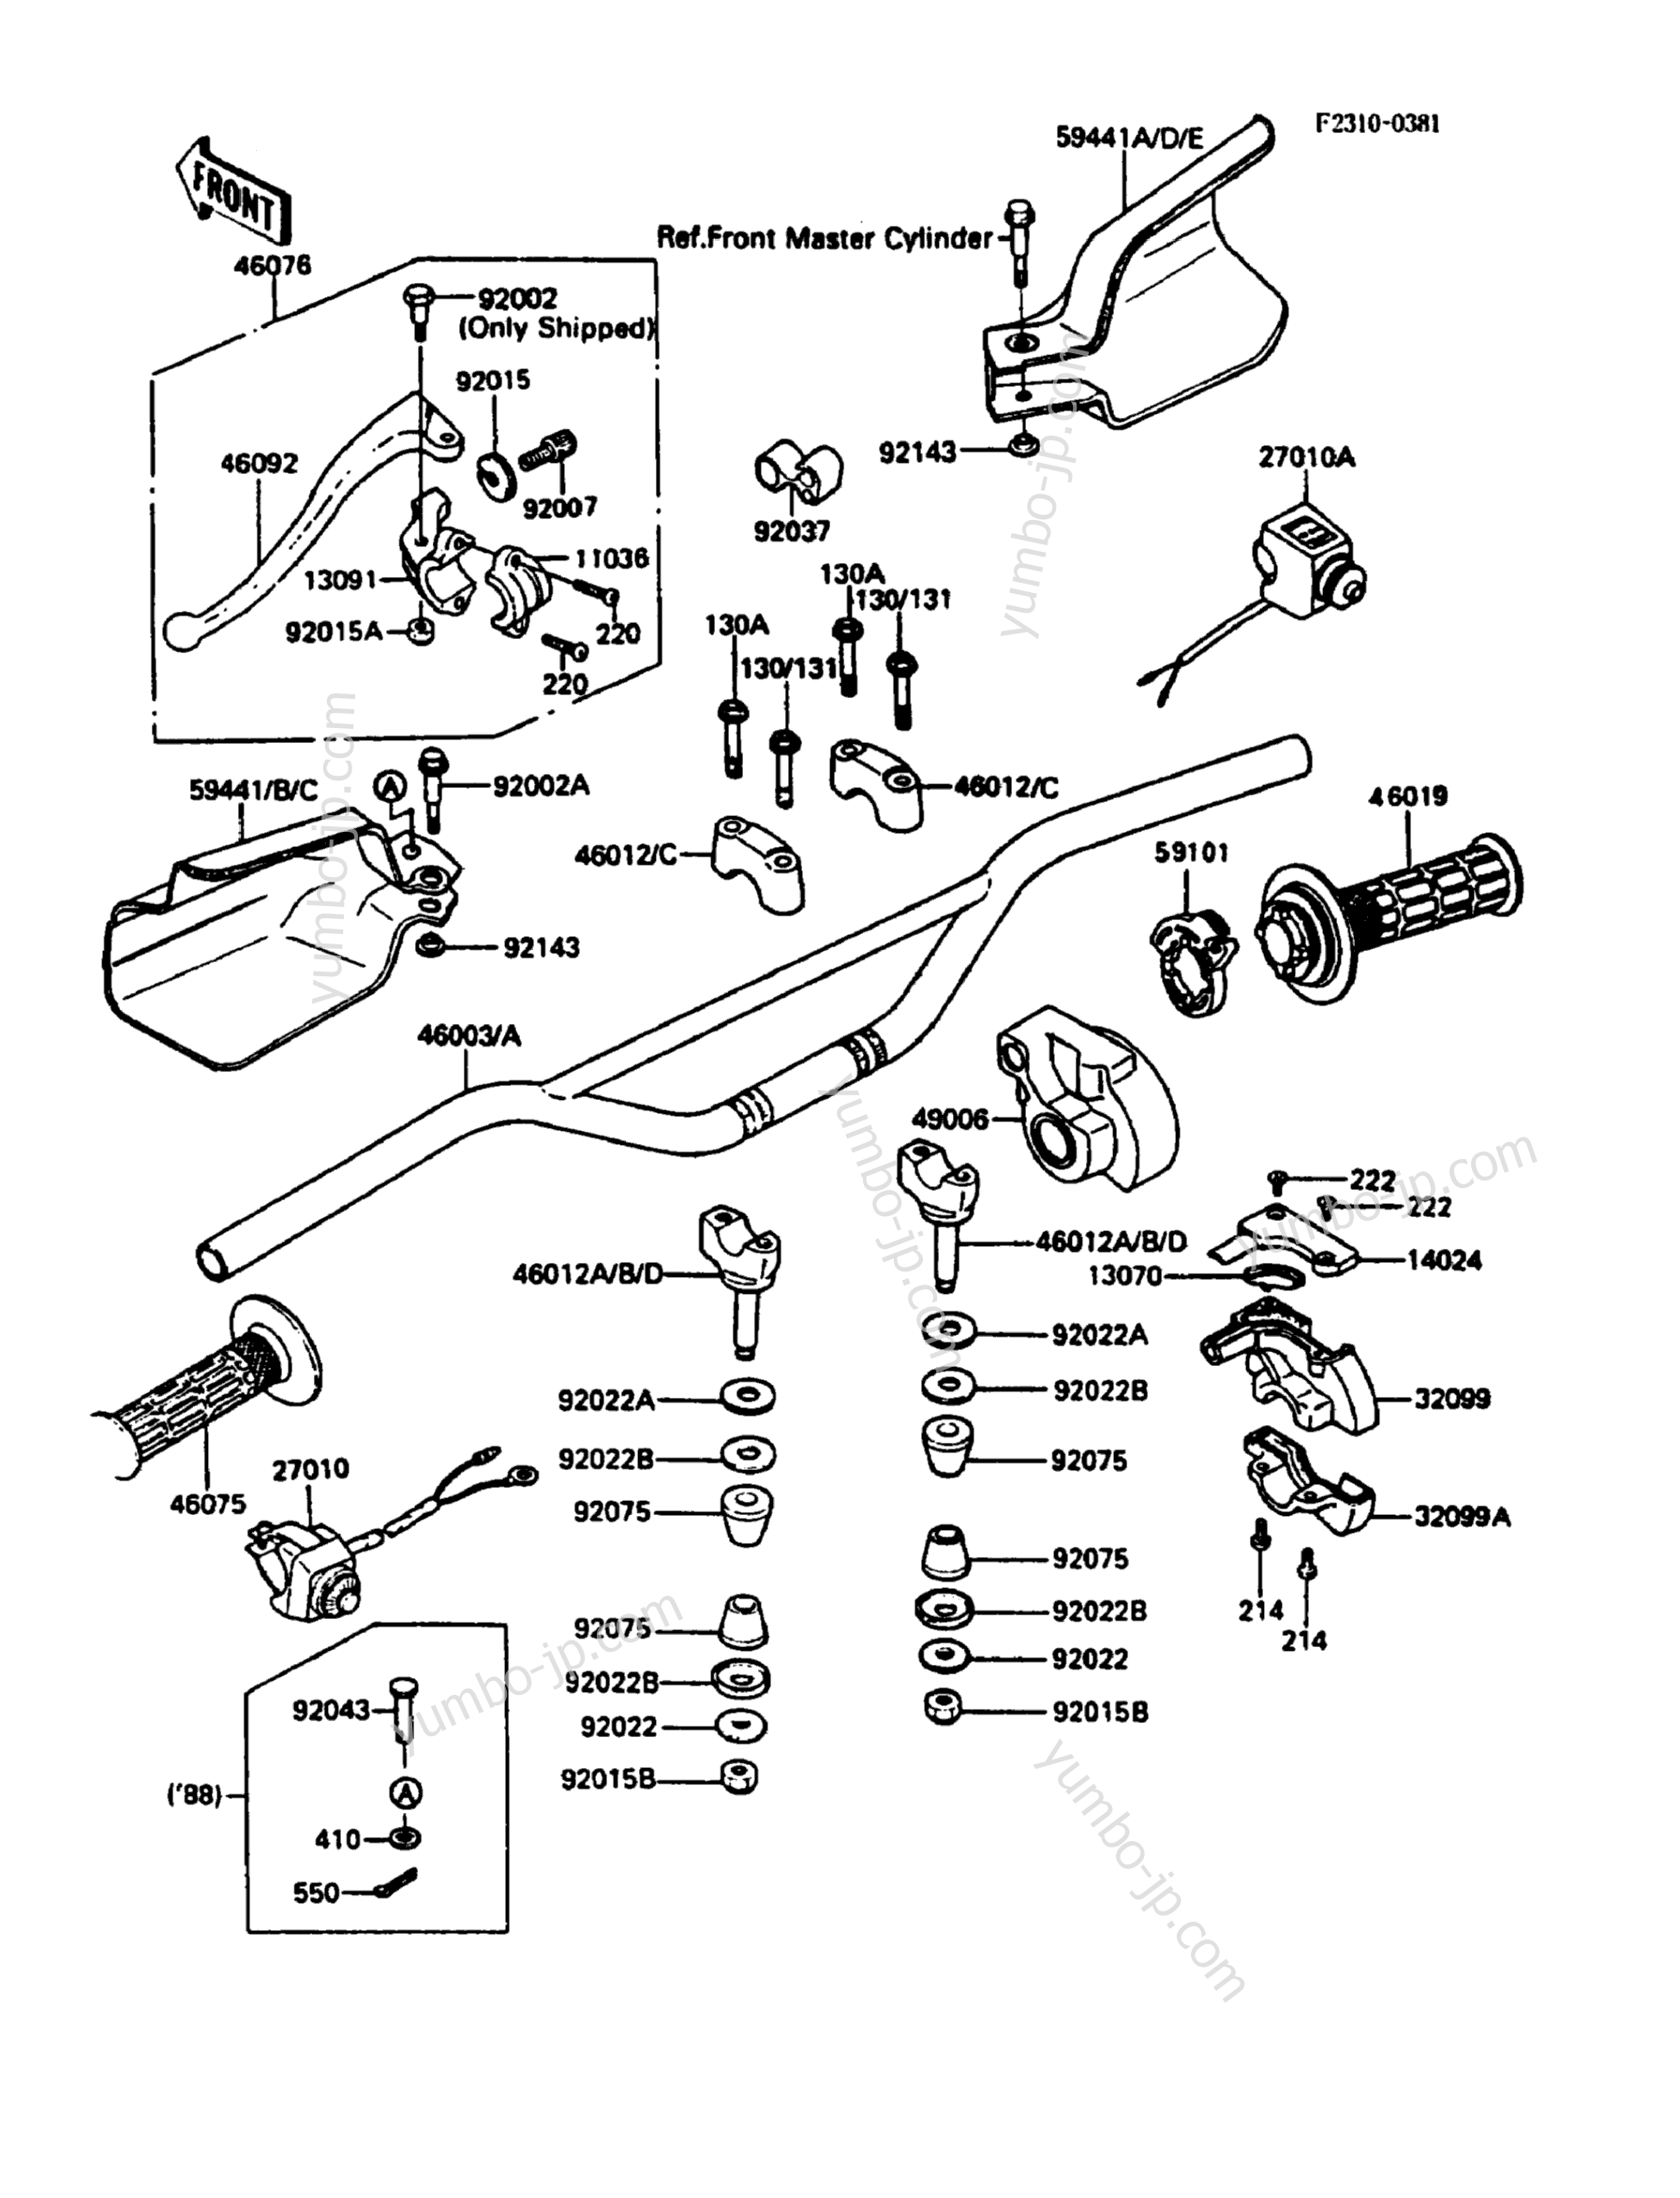 Румпель (рукоятка управления) для мотоциклов KAWASAKI KDX200 (KDX200-C3) 1988 г.